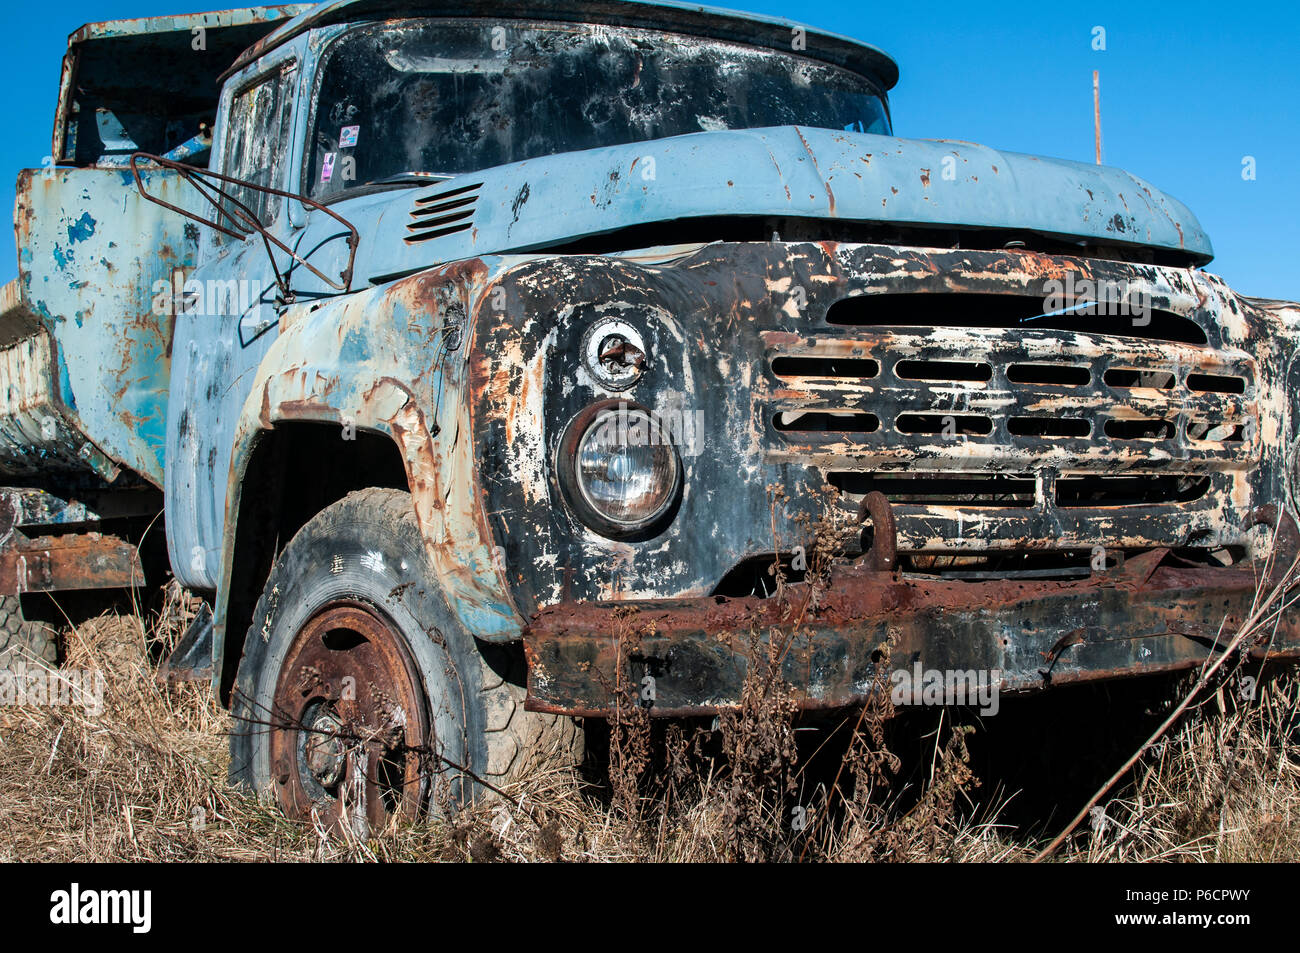 Alten, verlassenen dreckig kaputt vintage Truck in der Mitte der paintball  Feld Spielplatz Stockfotografie - Alamy